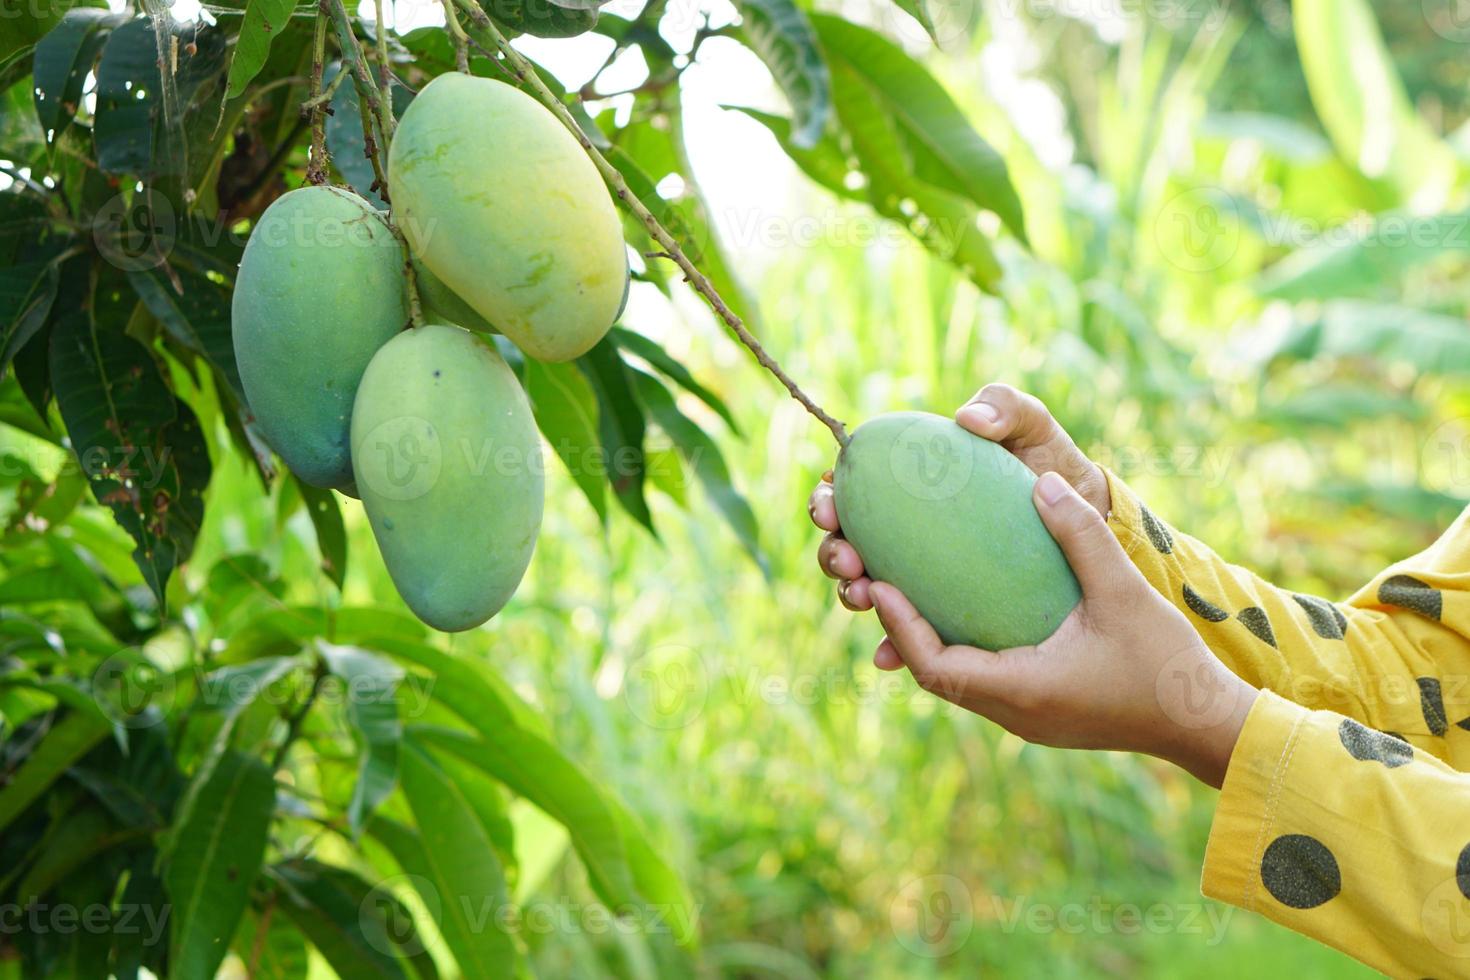 Bauernhand pflückt Mangos im Baum foto